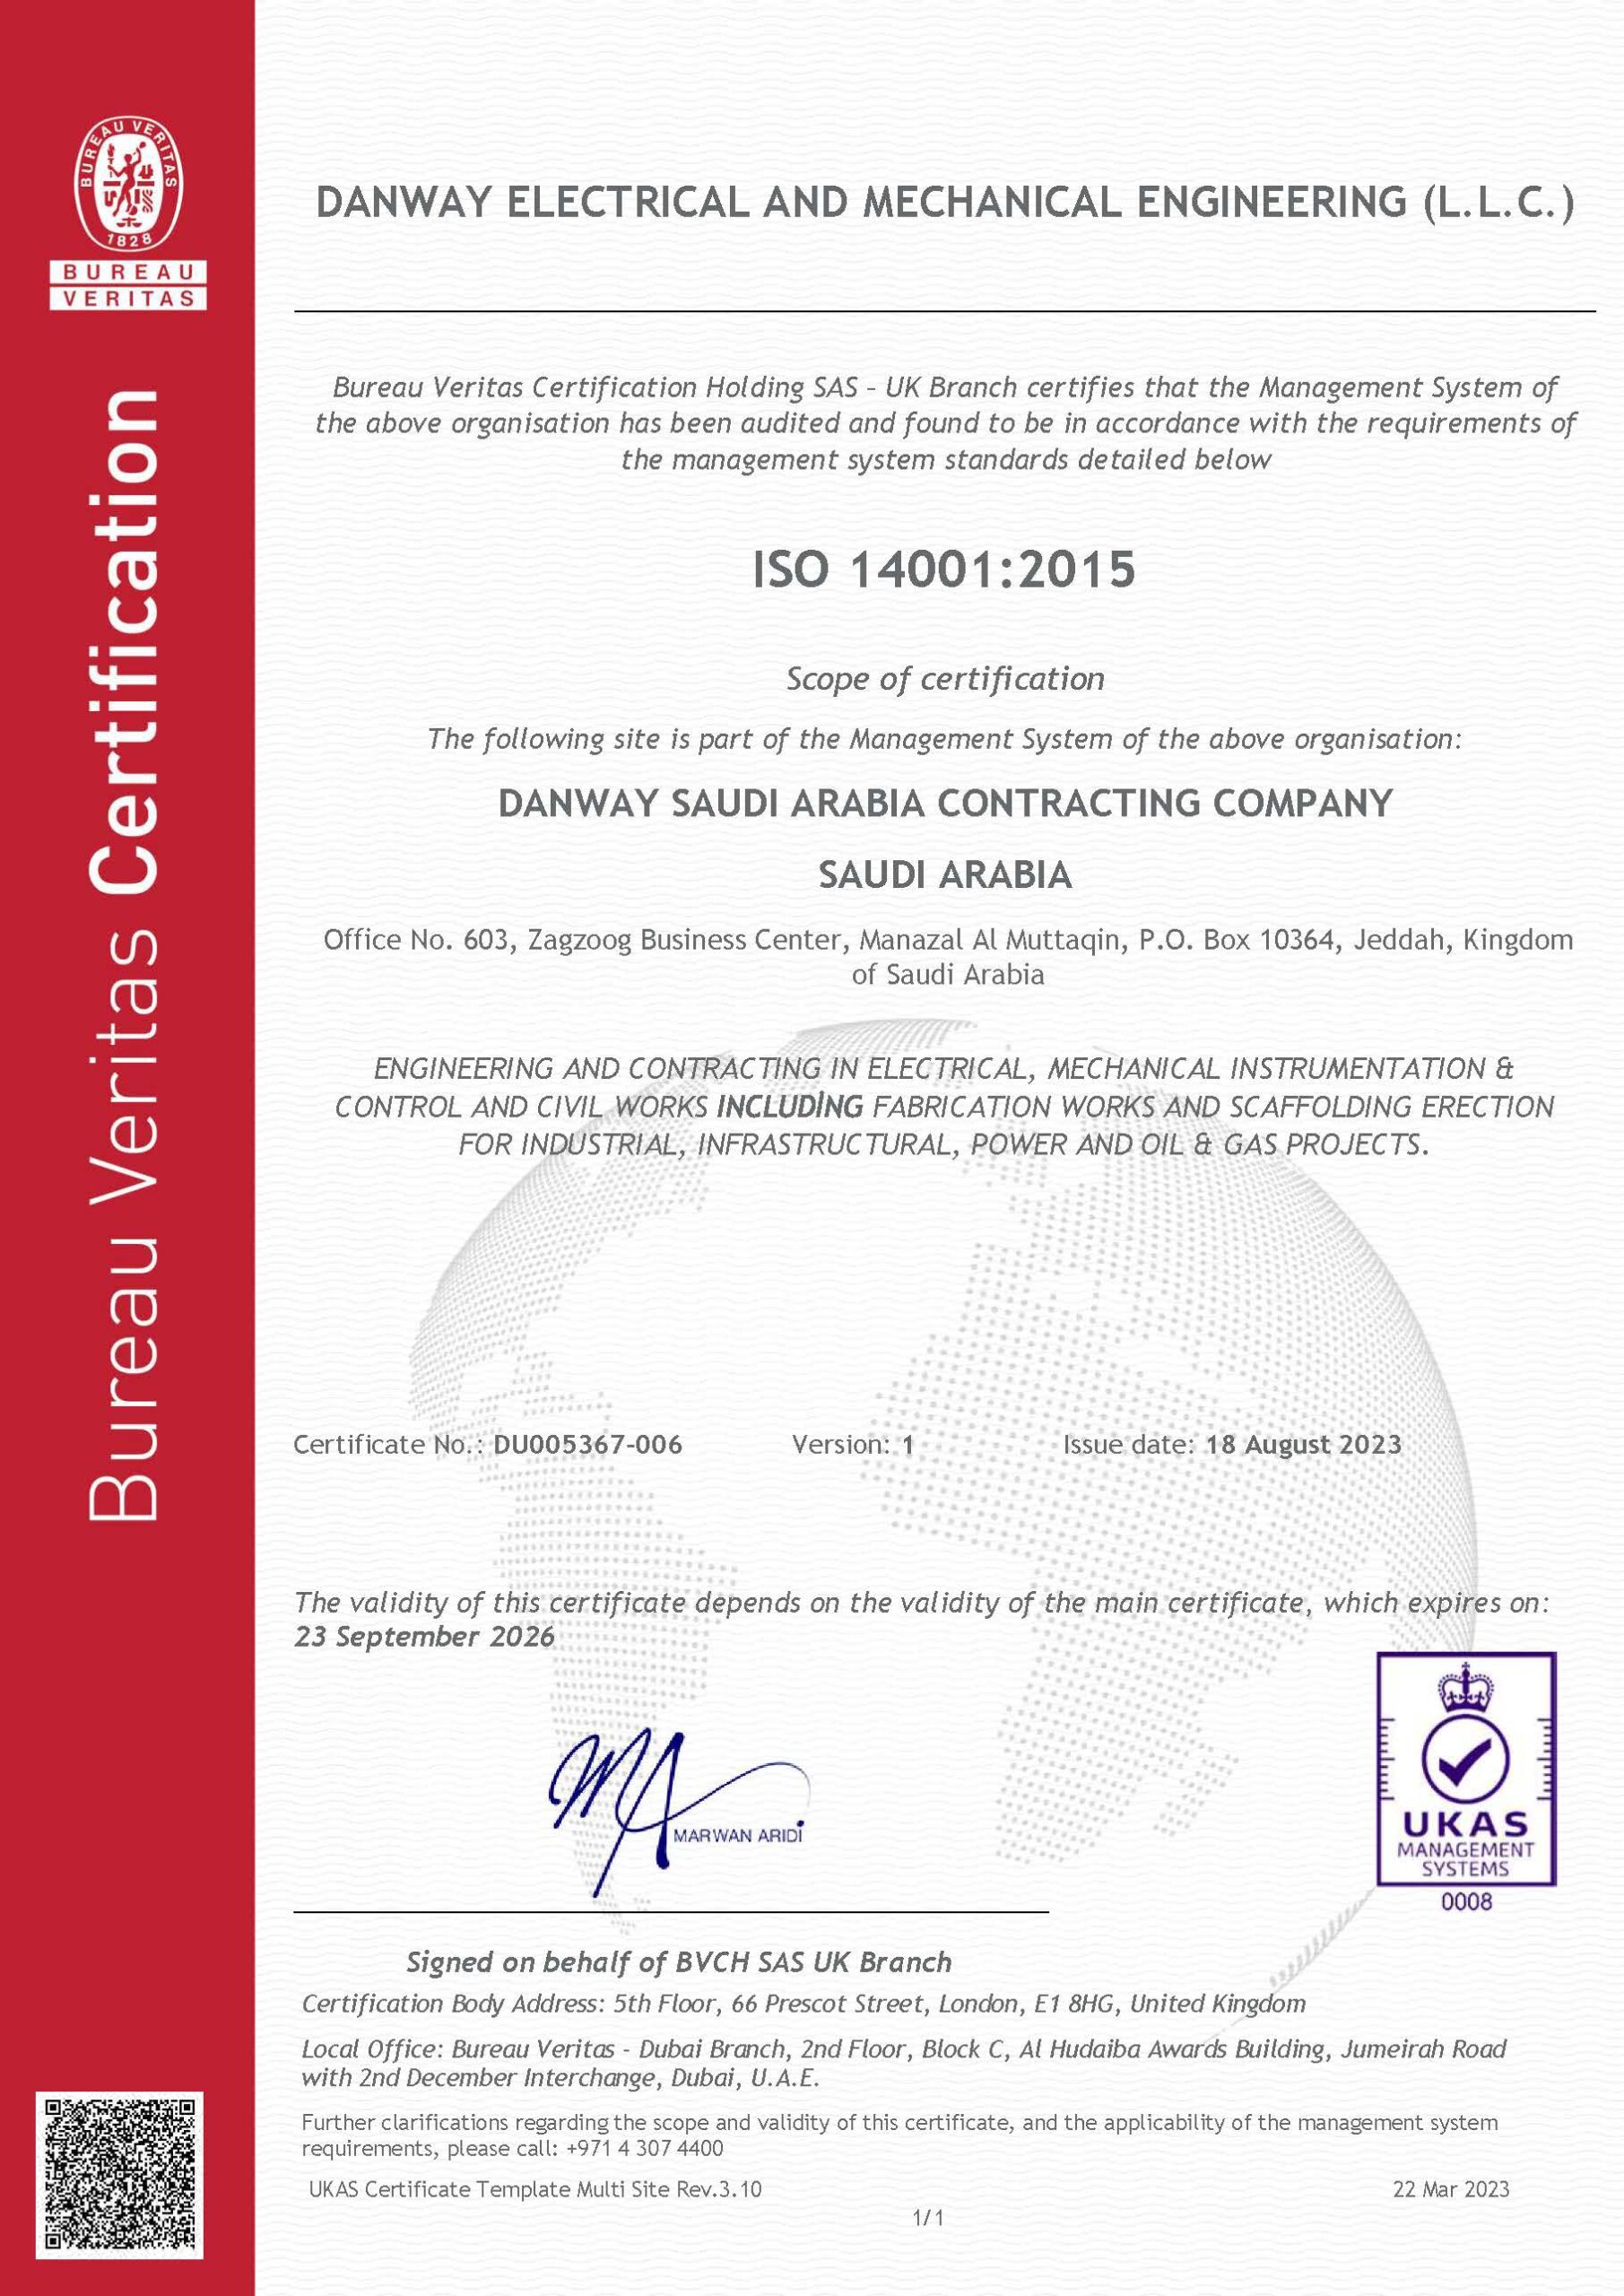 ISO14001:2015 Danway EME, KSA